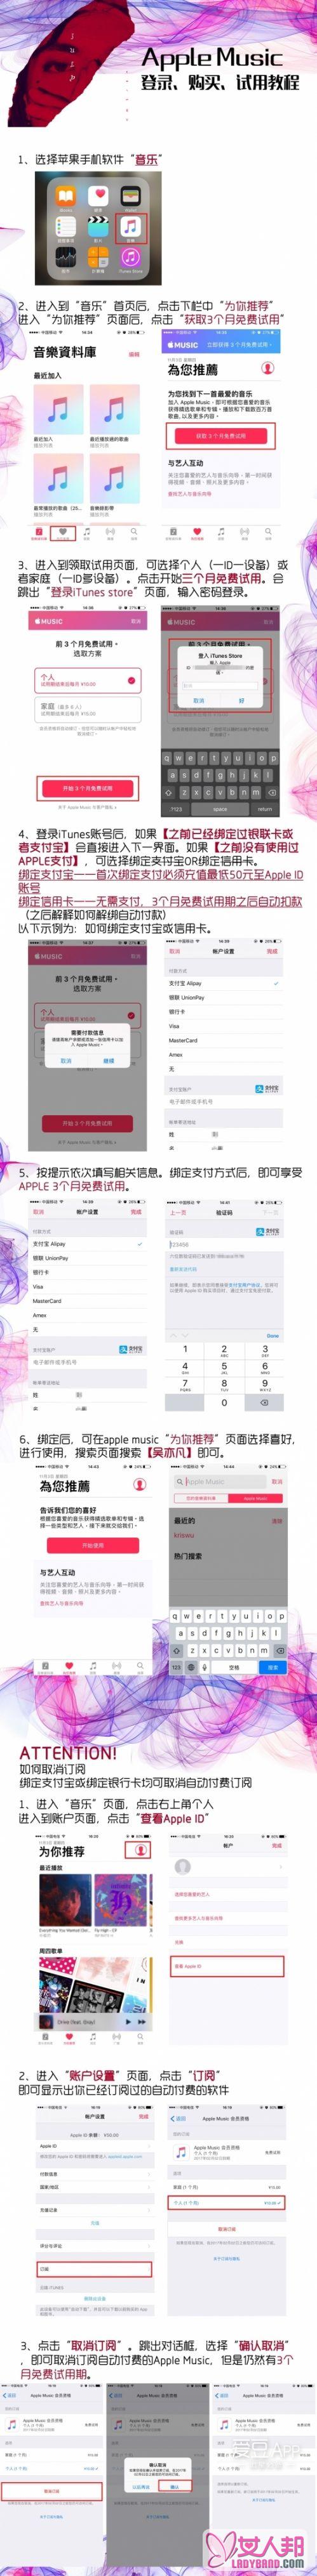 >吴亦凡最新单曲《July》哪里试听 iTunes打榜APP使用教程